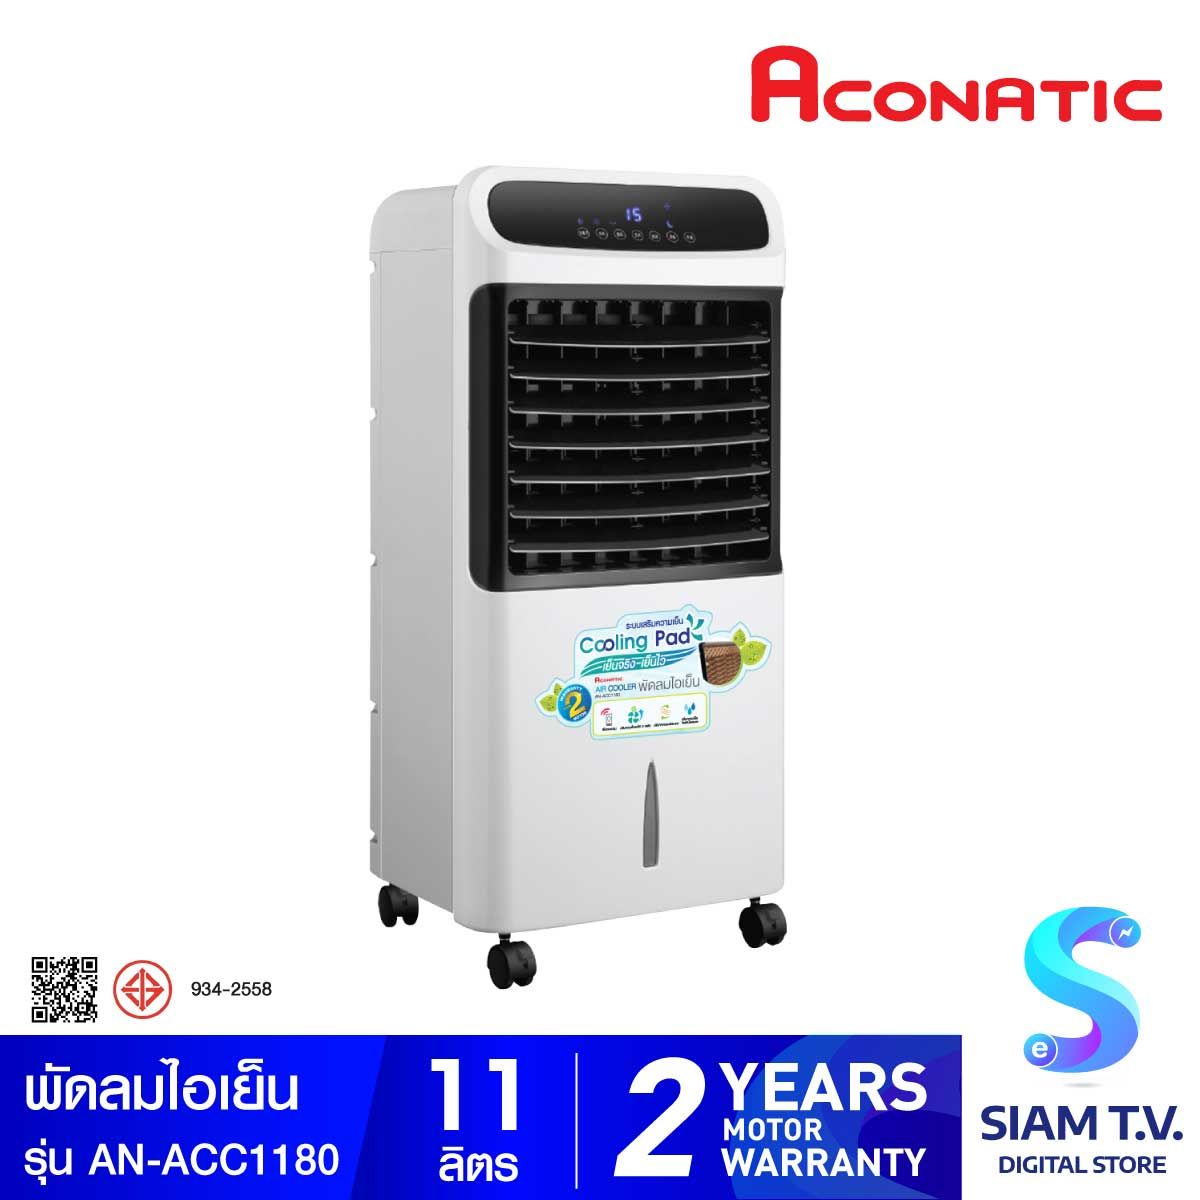 ACONATIC พัดลมไอเย็น รุ่น AN-ACC1180 ความจุน้ำ 11 ลิตร